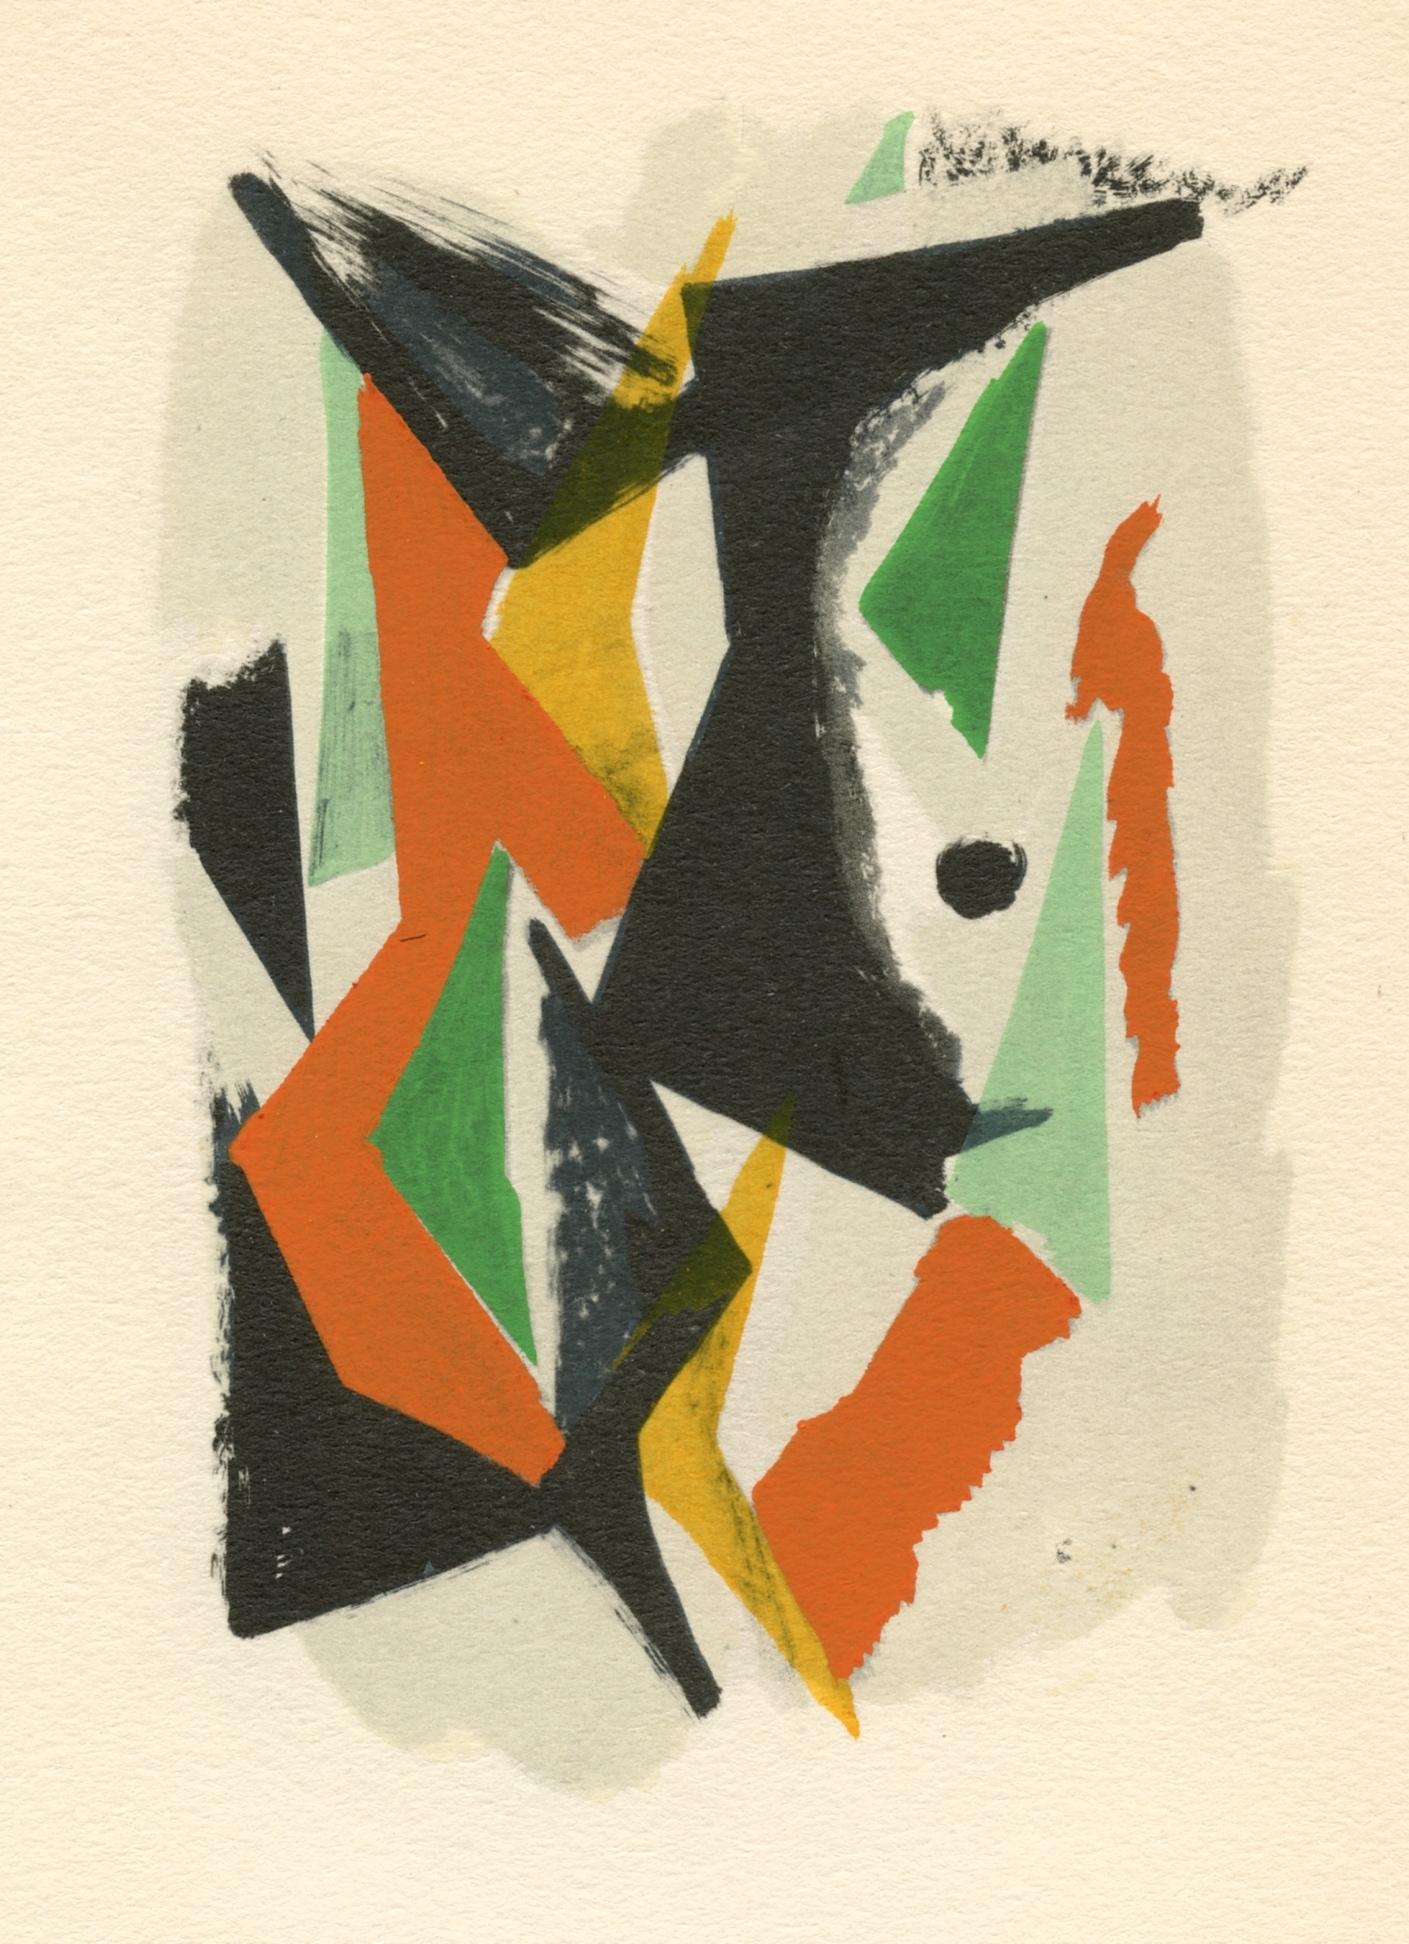 Medium: Pochoir (nach der Lithographie). Gedruckt im Atelier von Daniel Jacomet, veröffentlicht 1955 in Paris von Heinz Berggruen. Das Bild misst 5 x 3 1/2 Zoll (130 x 90 mm). Nicht unterzeichnet.